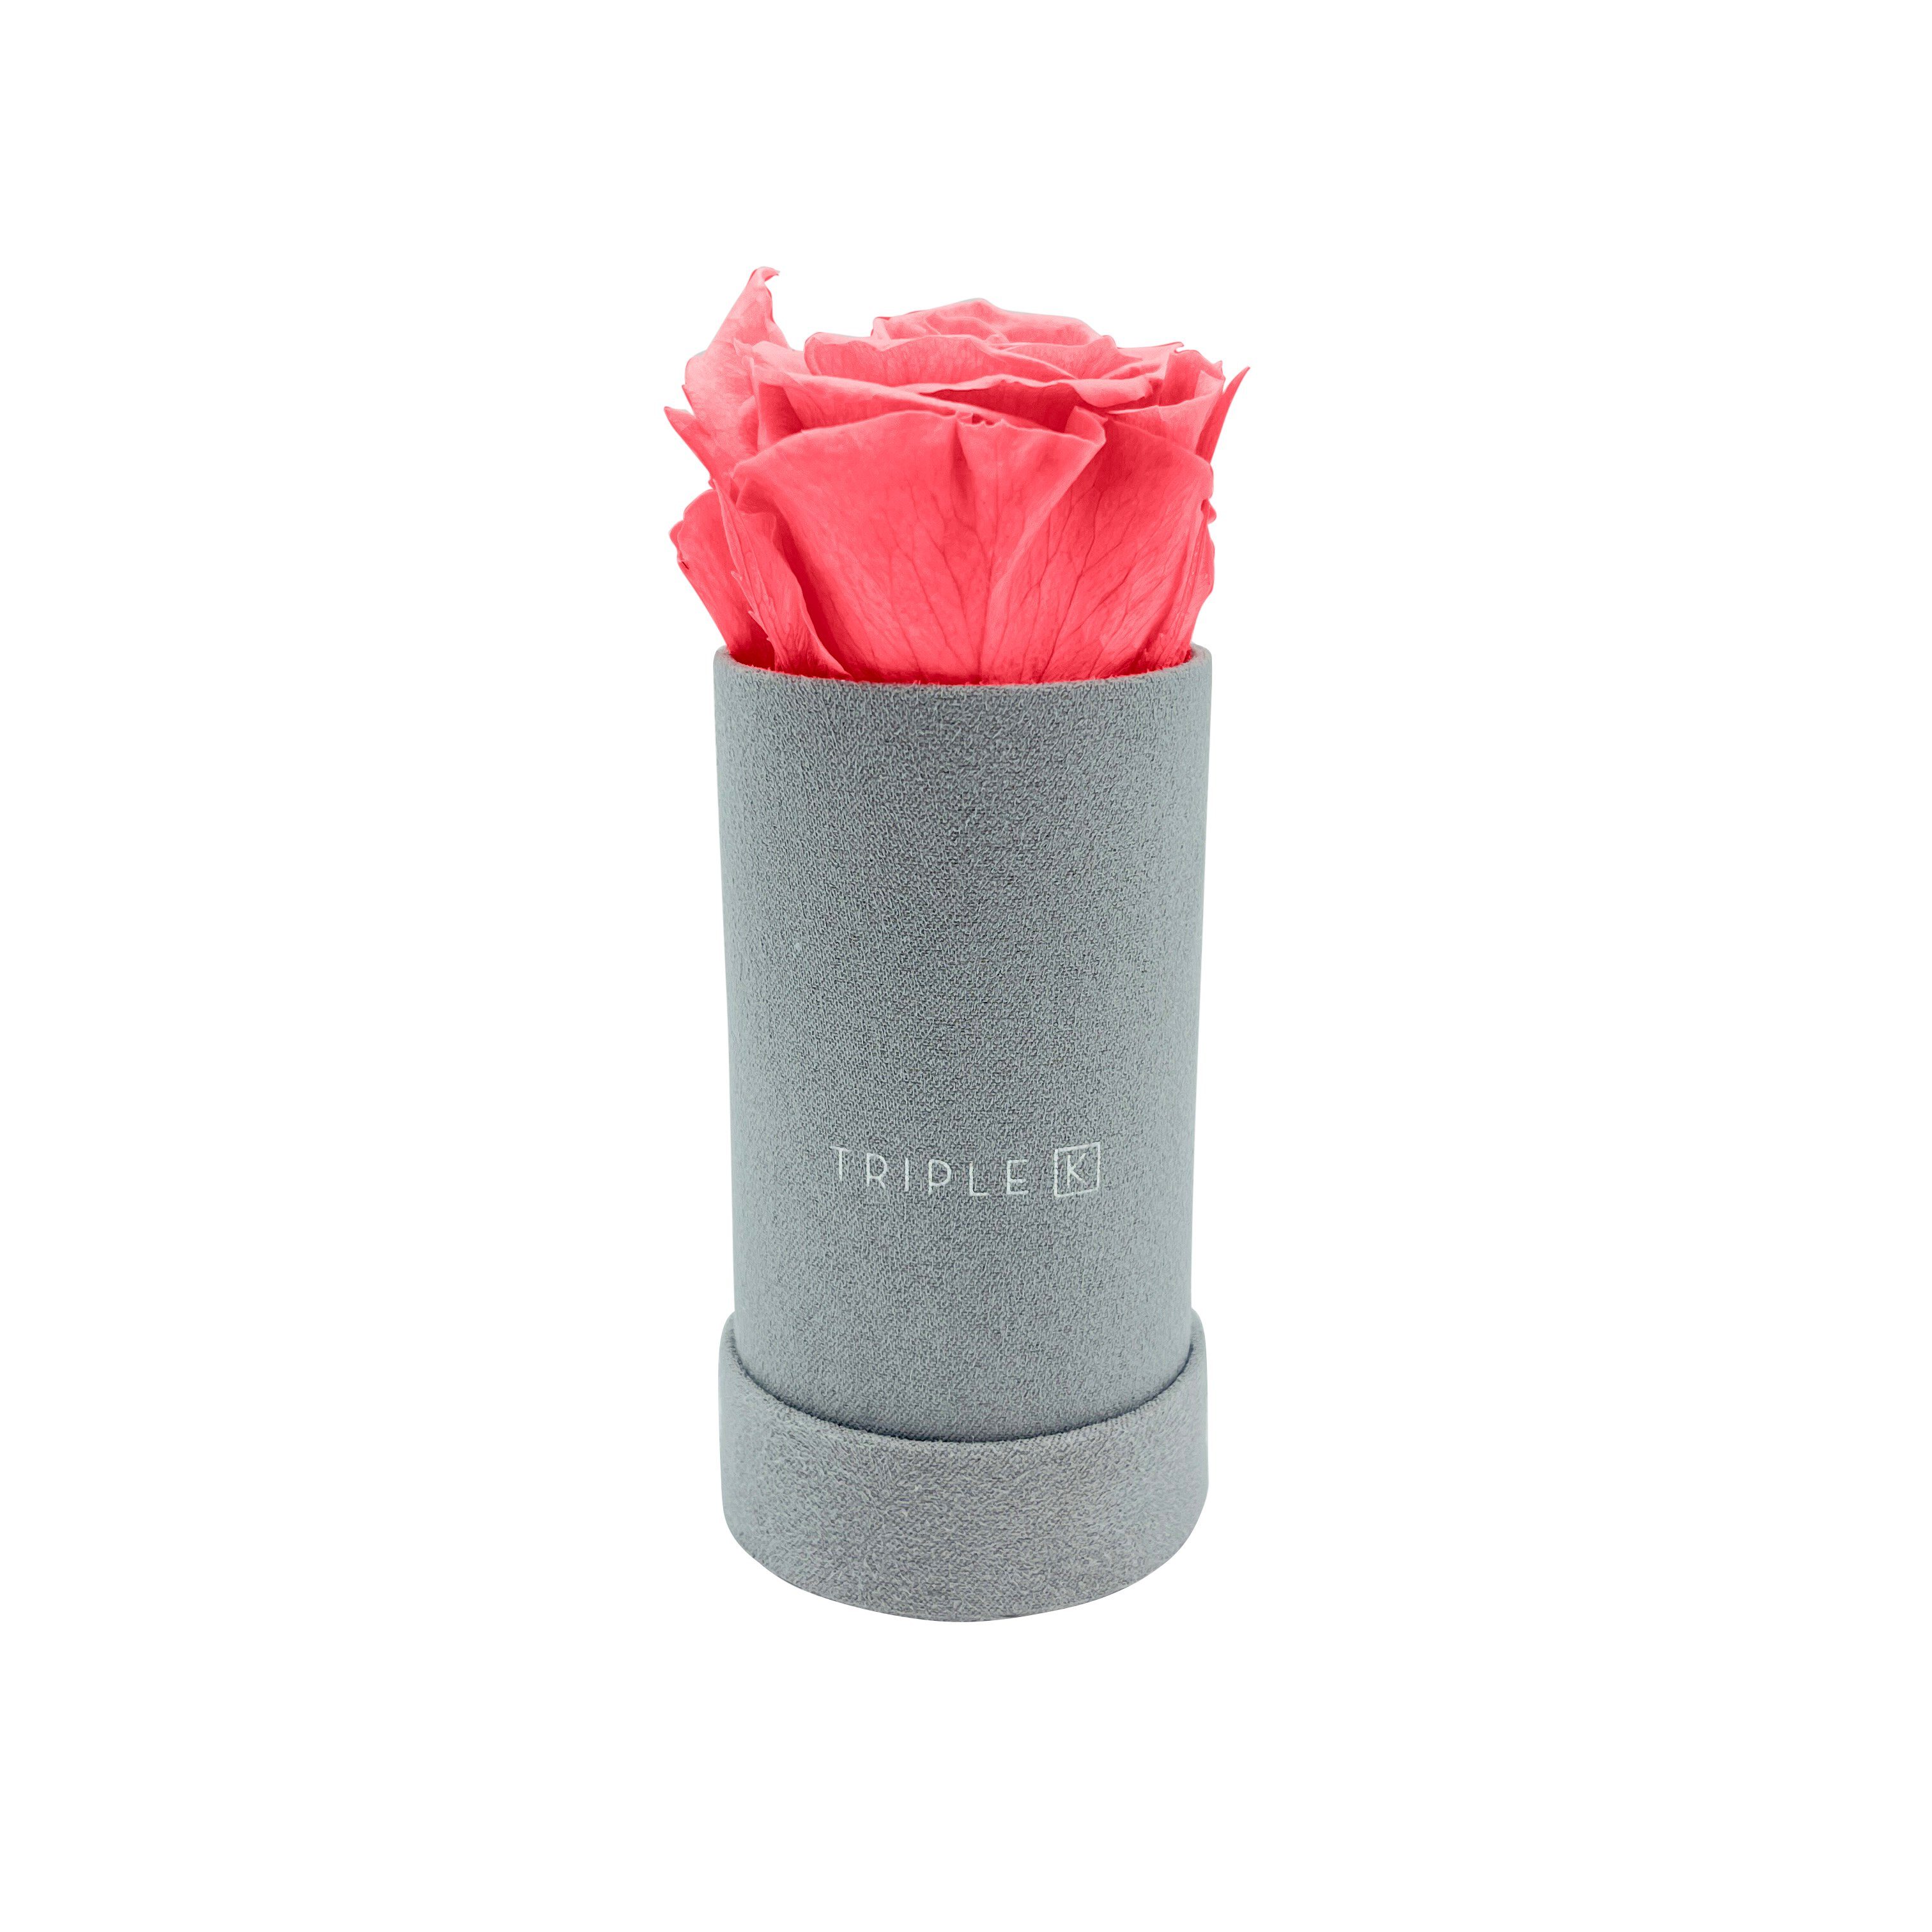 Kunstblume TRIPLE K - Rosenbox Velvet mit Infinity Rosen, bis 3 Jahre Haltbar, Flowerbox mit konservierten Rosen, Blumenbox Inkl. Grußkarte Infinity Rose, TRIPLE K Rosa | Kunstblumen